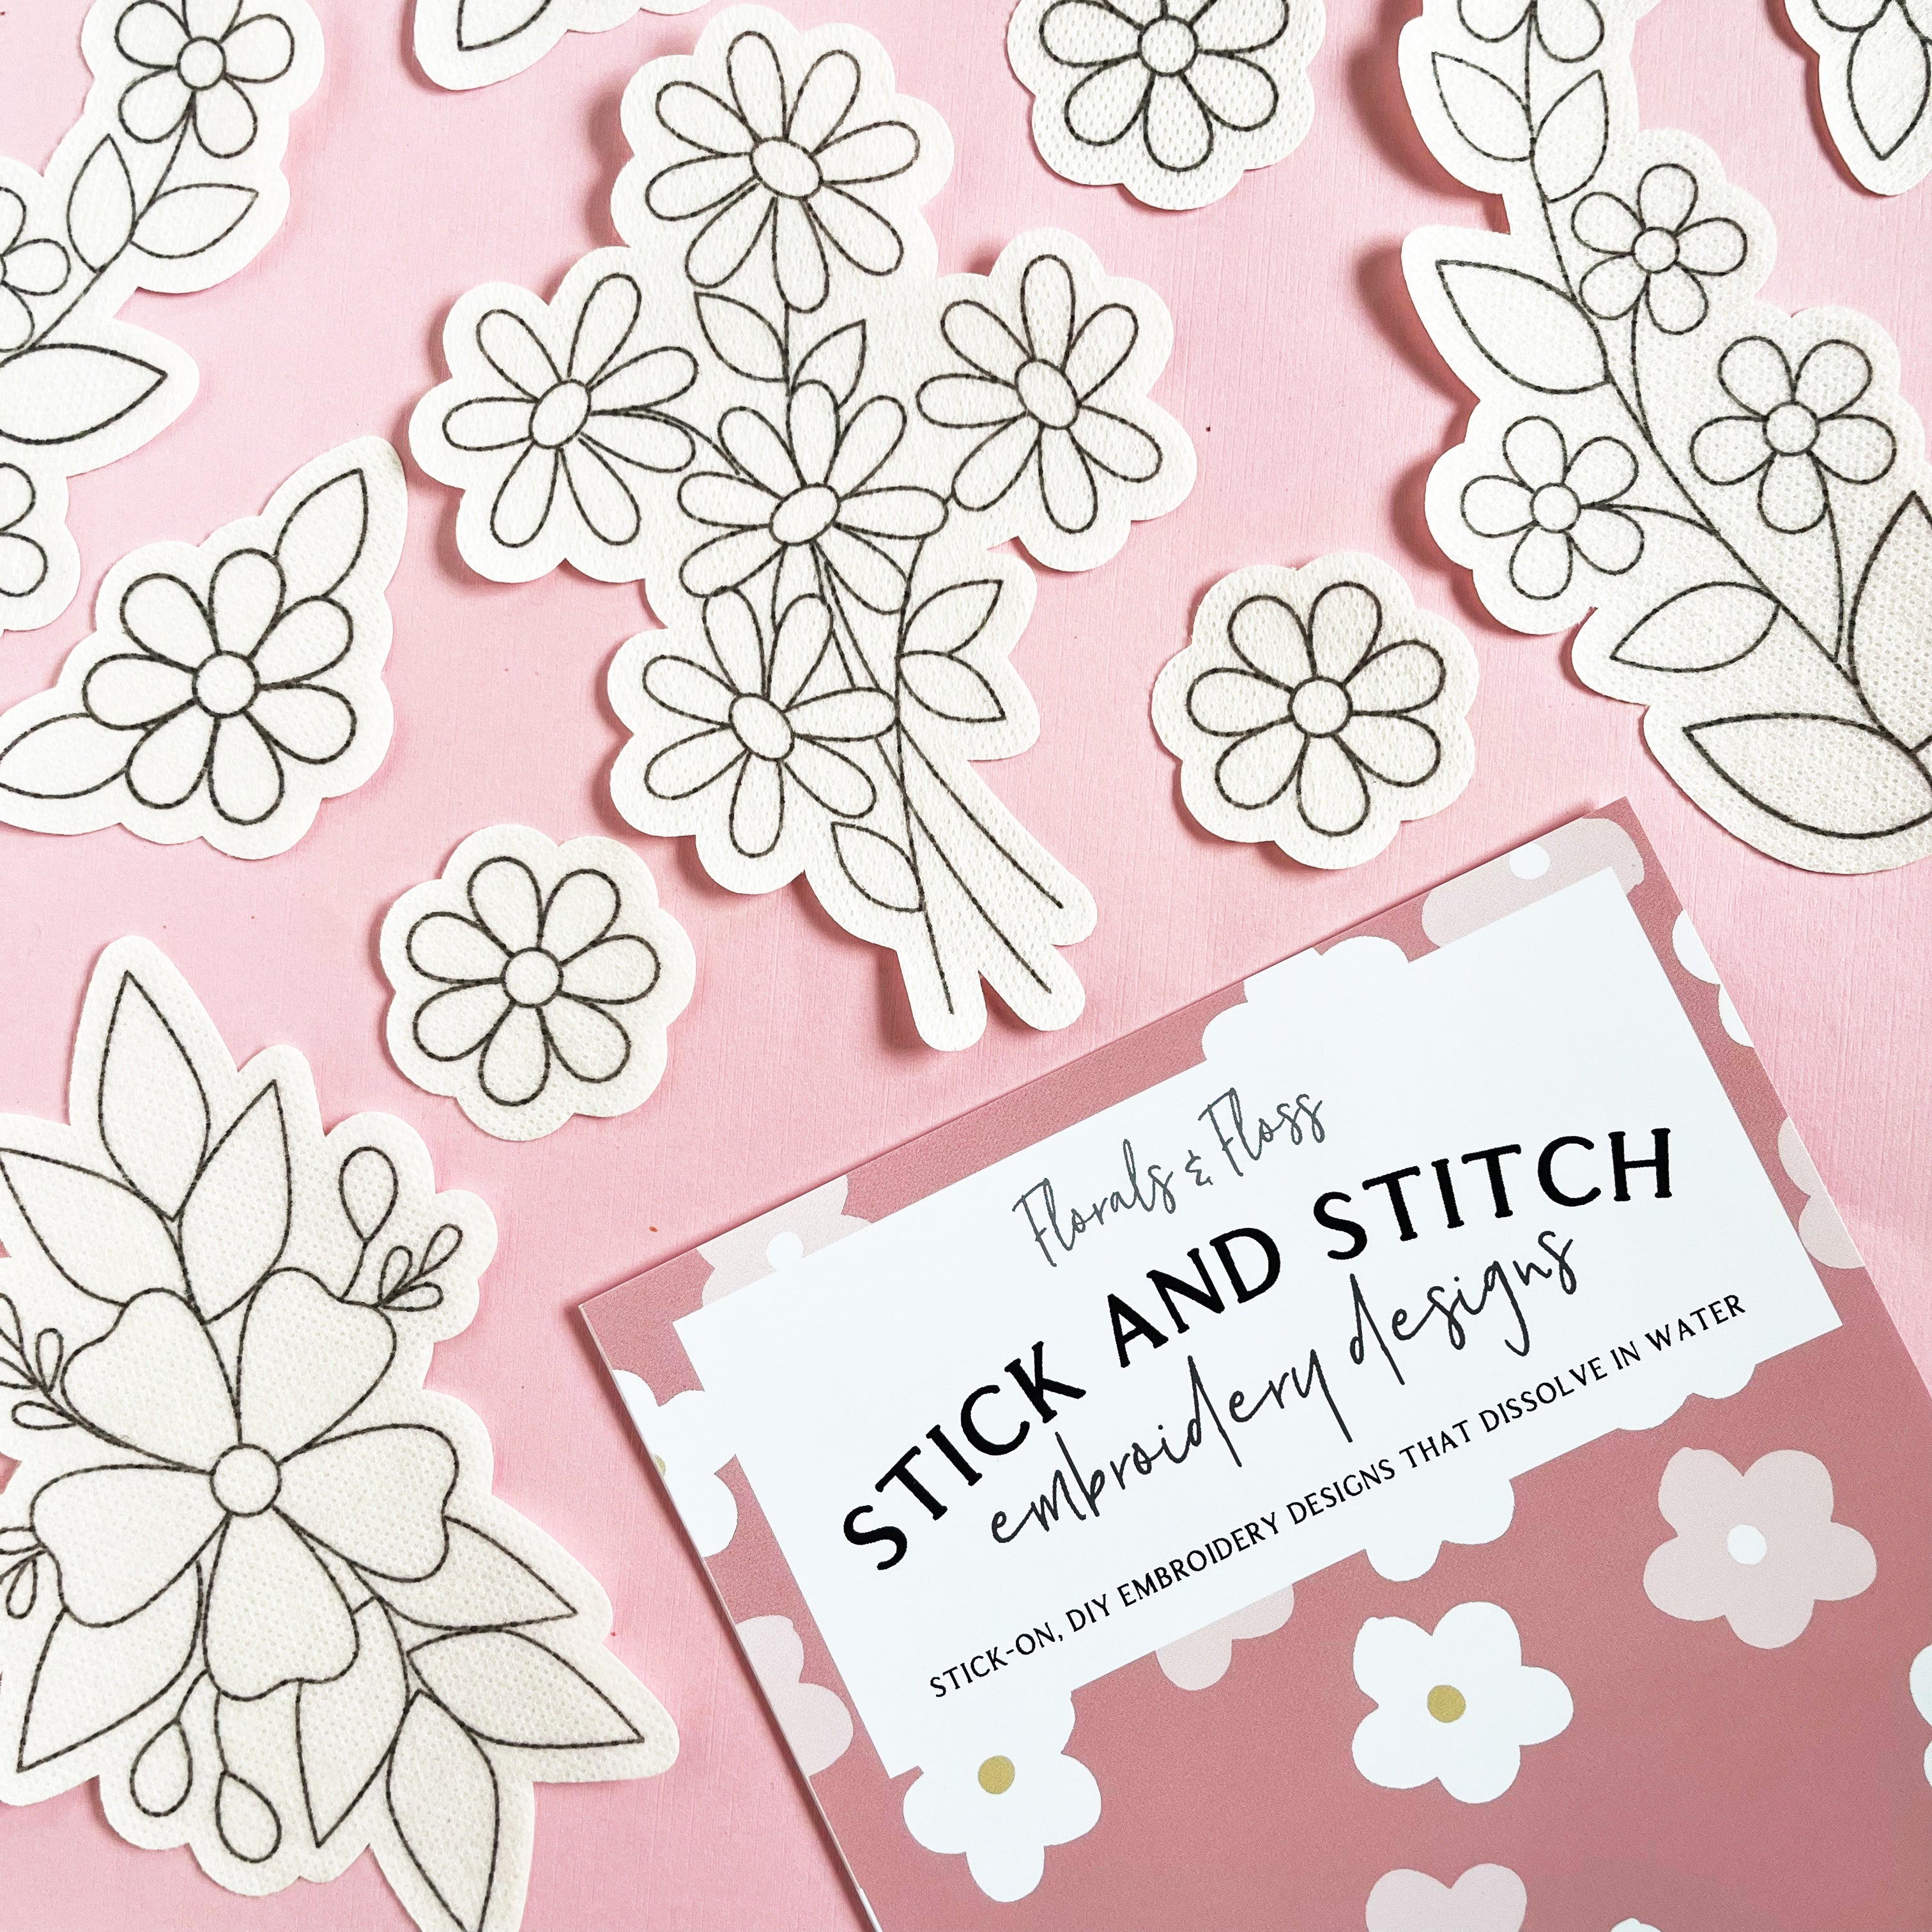 Stick & Stitch, Fun & Floral, Pack of 9 designs